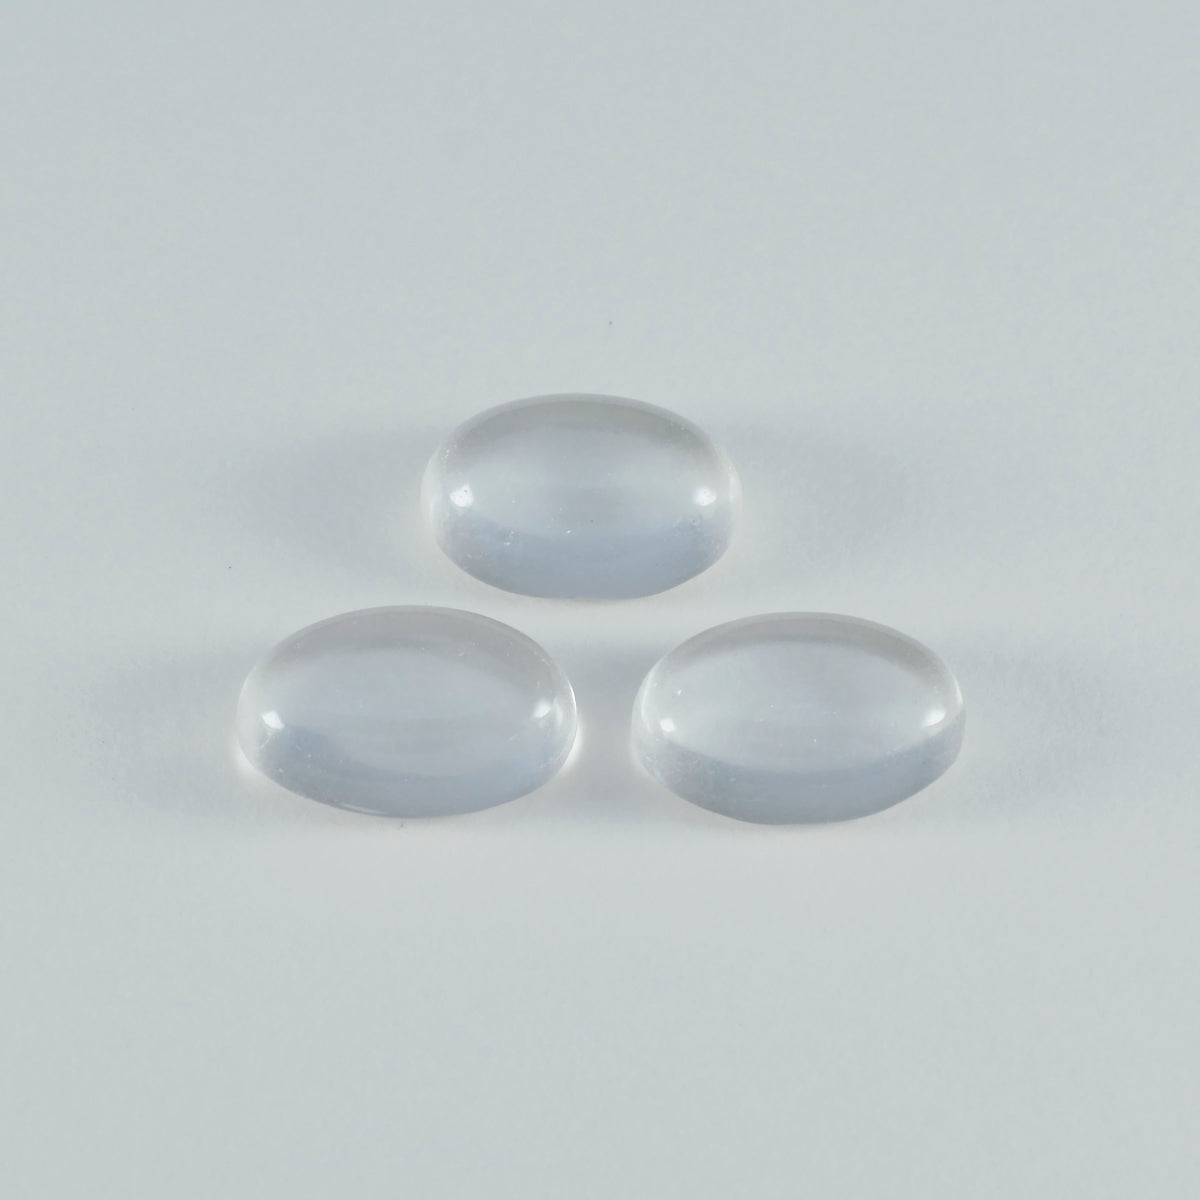 Riyogems, 1 pieza, cabujón de cuarzo de cristal blanco, 12x16mm, forma ovalada, gemas sueltas de calidad maravillosa